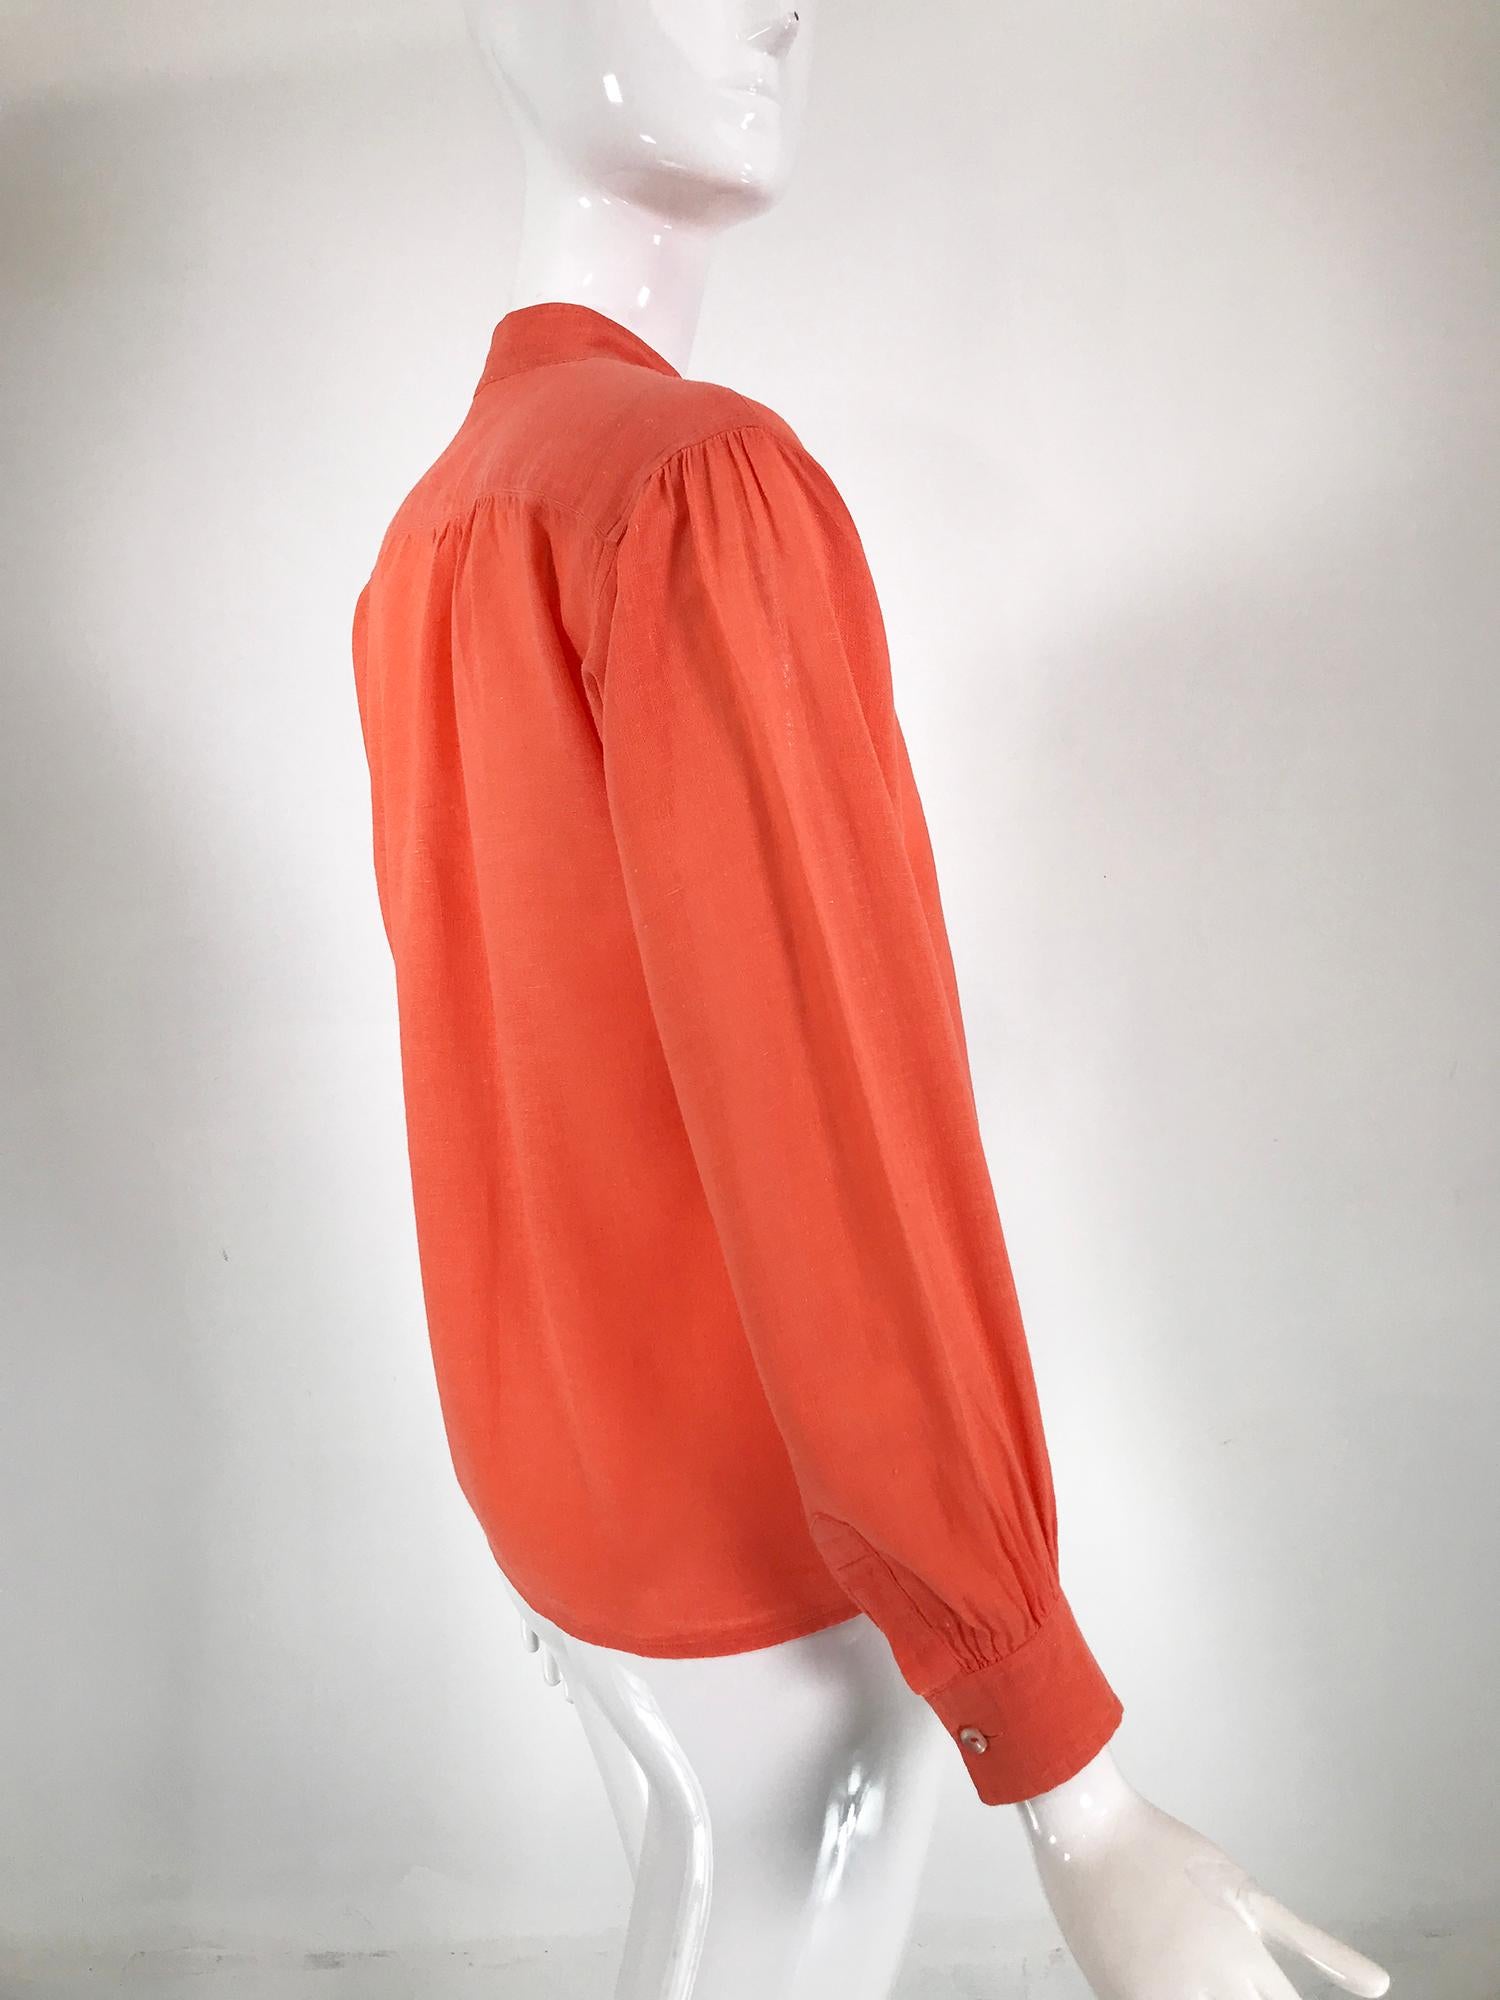 Women's Yves Saint Laurent Rive Gauche Orange Cotton Gauze Blouse 1960s